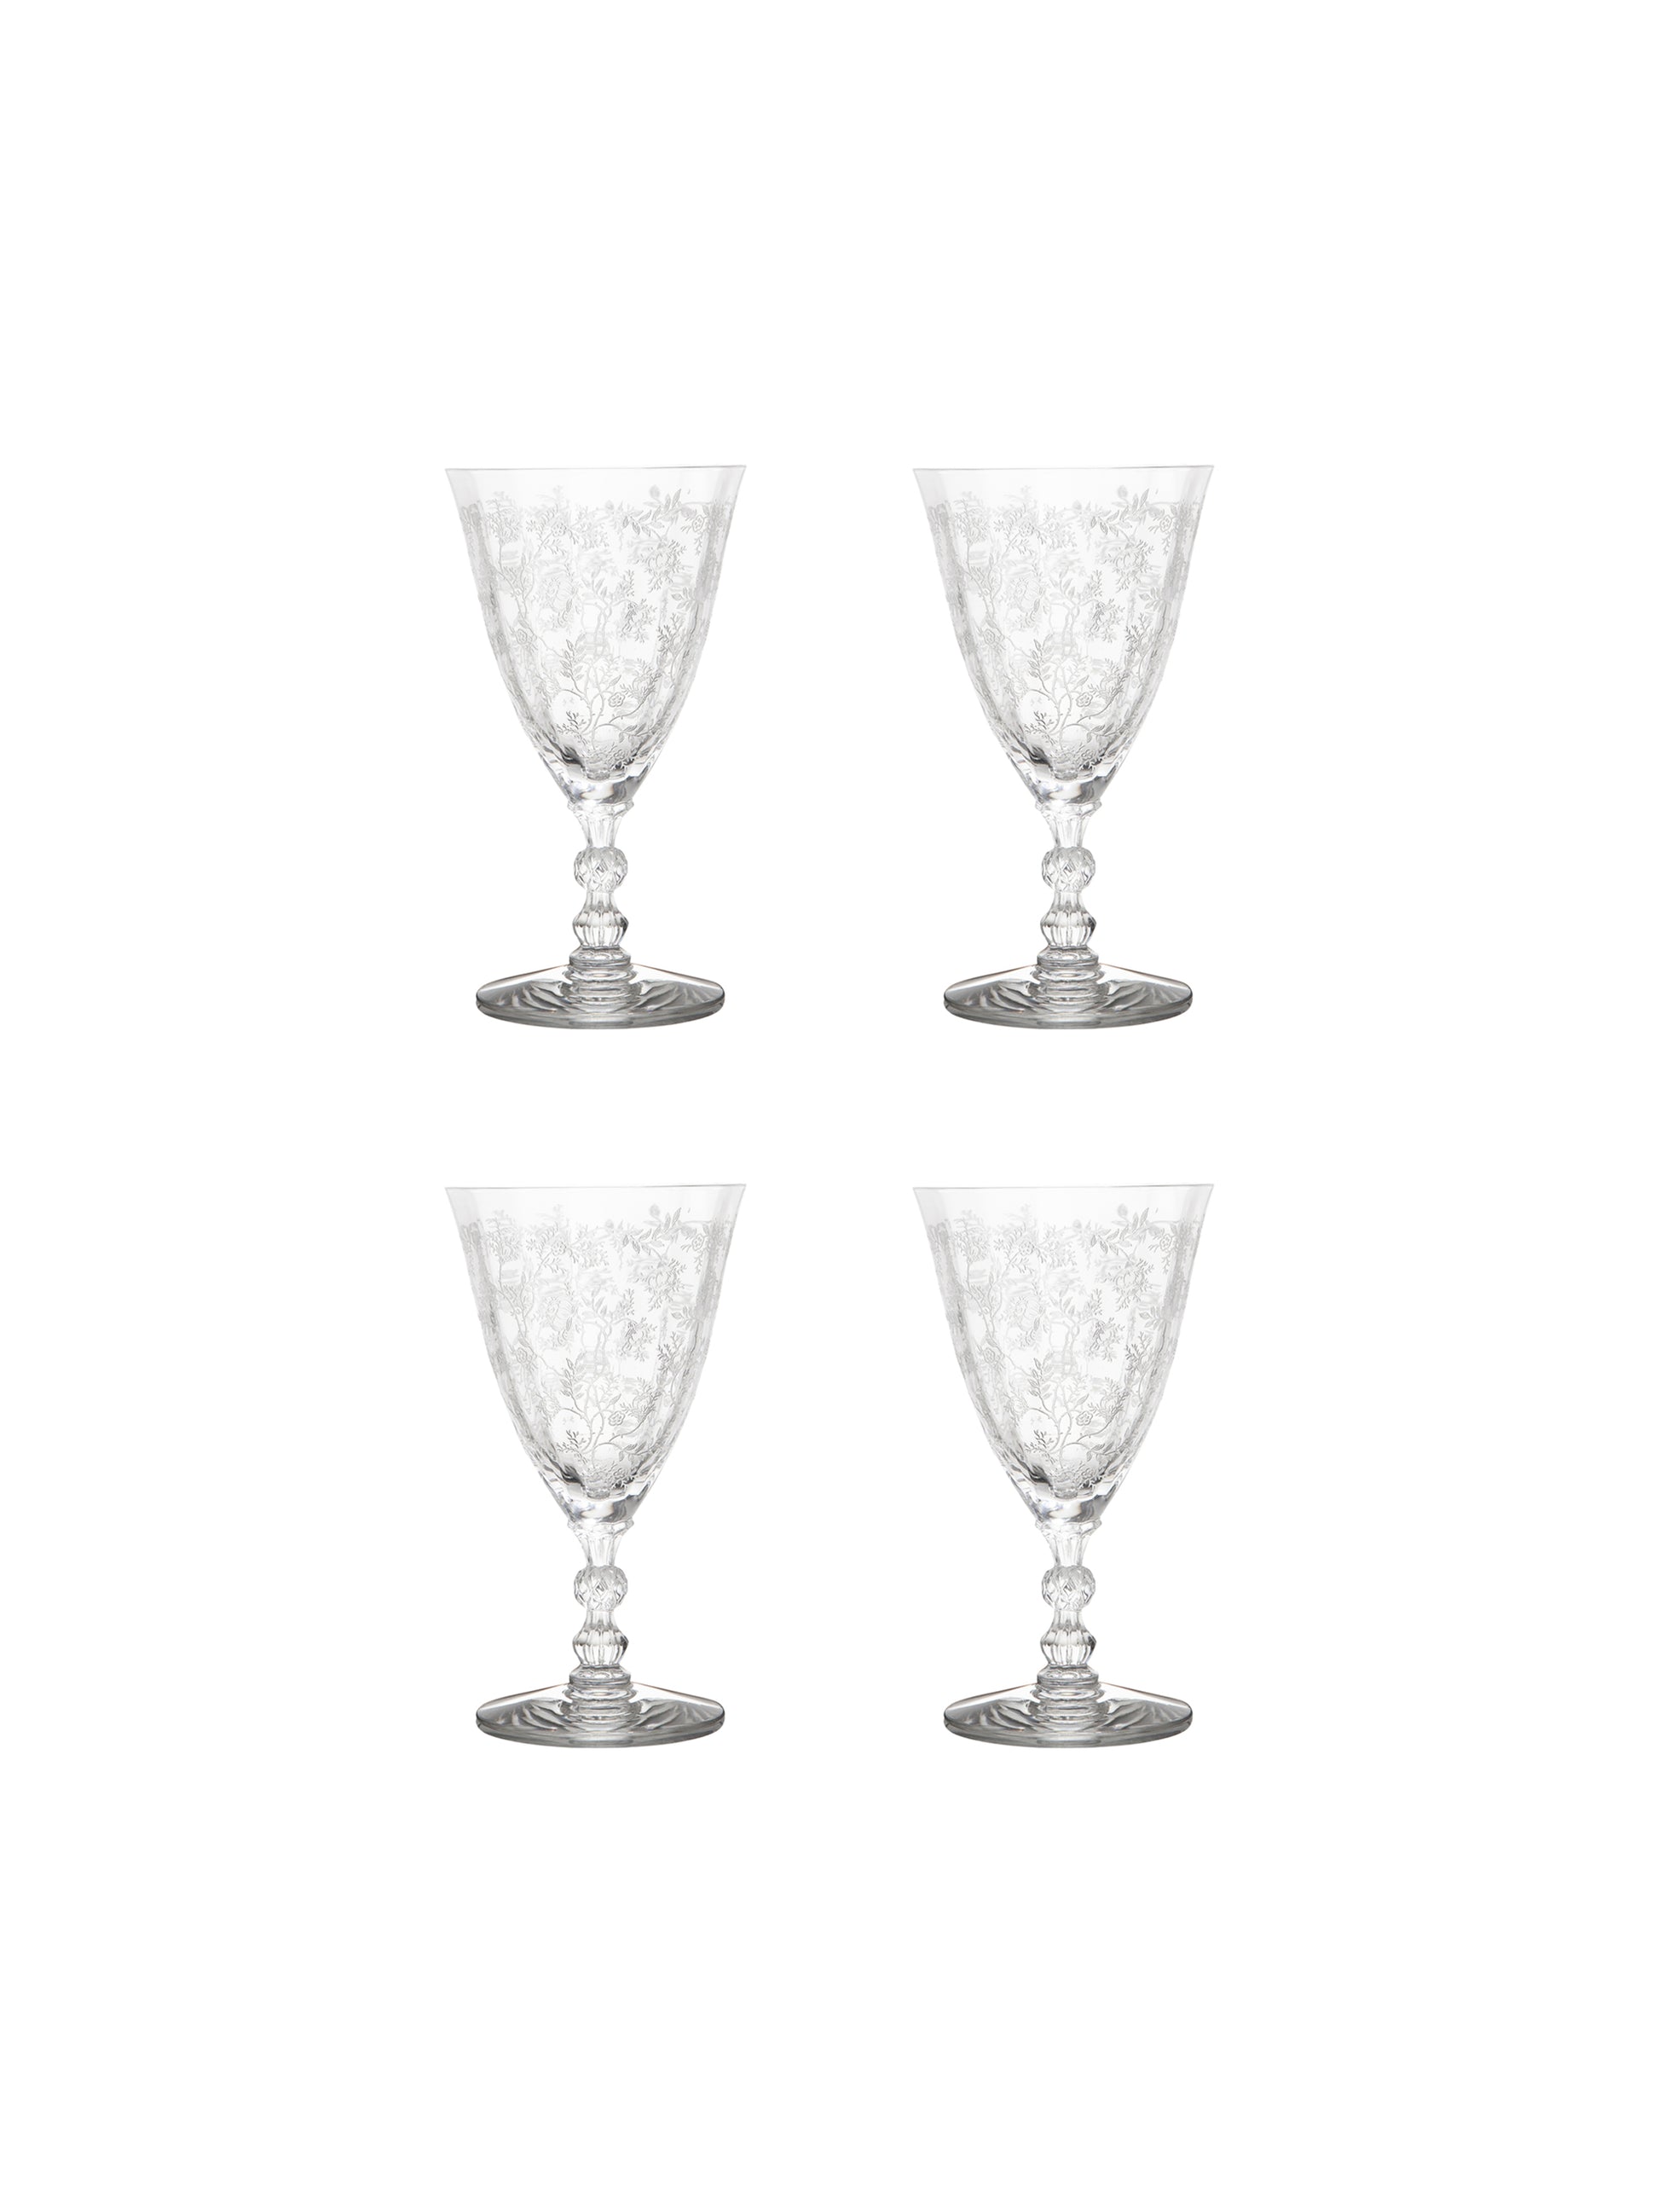 Vintage Rose Goblets Etched Cut Rose Crystal Wine Glasses 